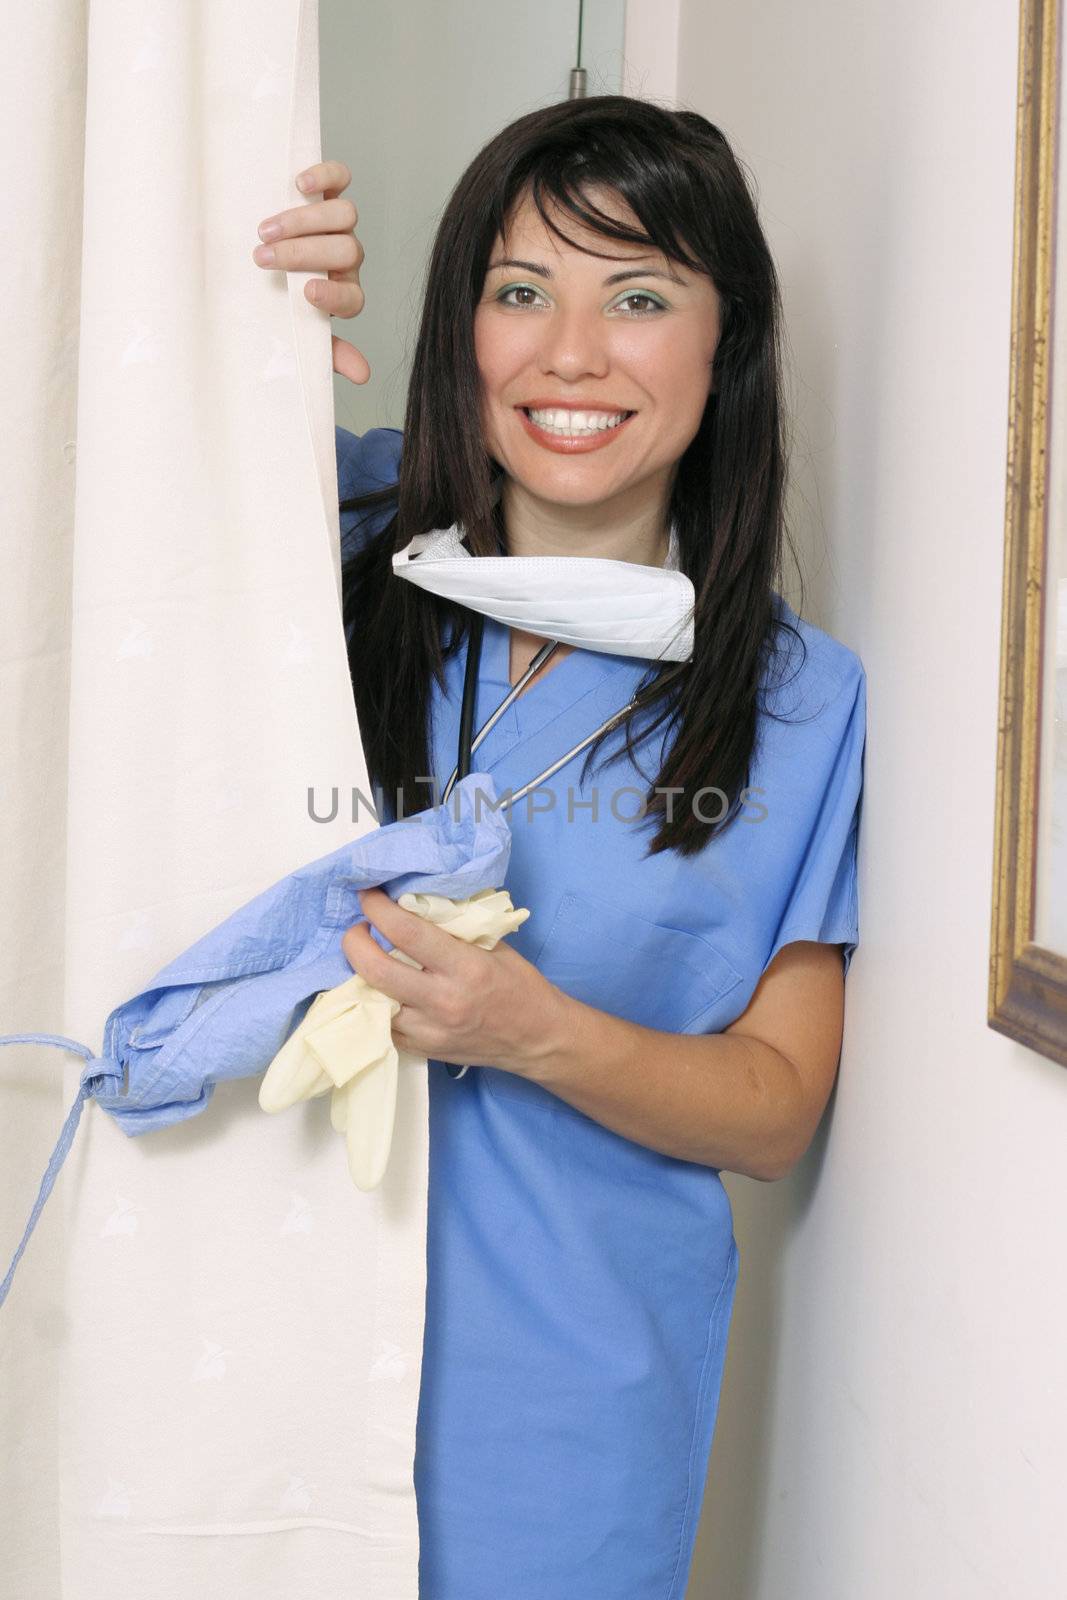 Smiling nurse entering ward by lovleah